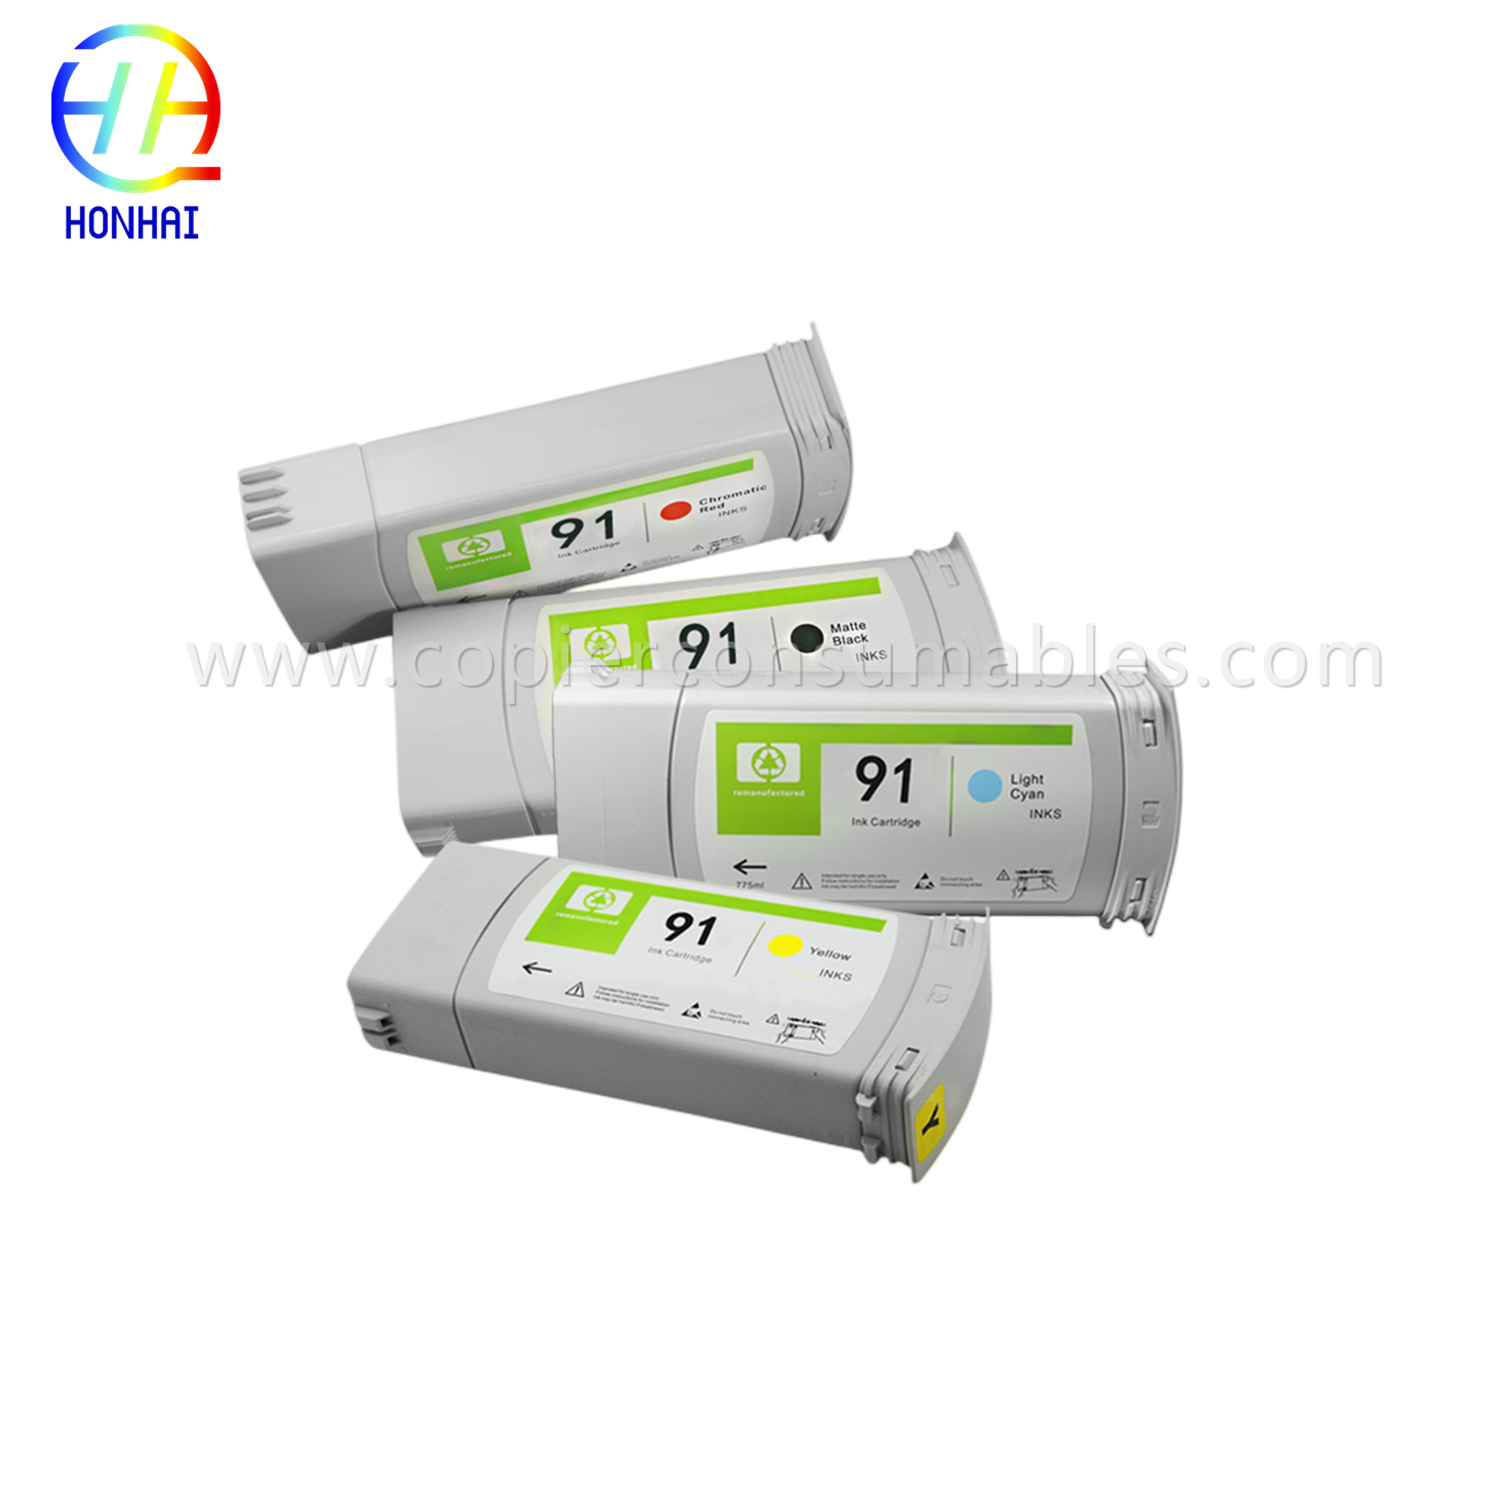 Bagong Tunay na Ink Cartridge para sa HP Designjet Z6100 (91 C9464A C9469A C9471 C9518) (1)